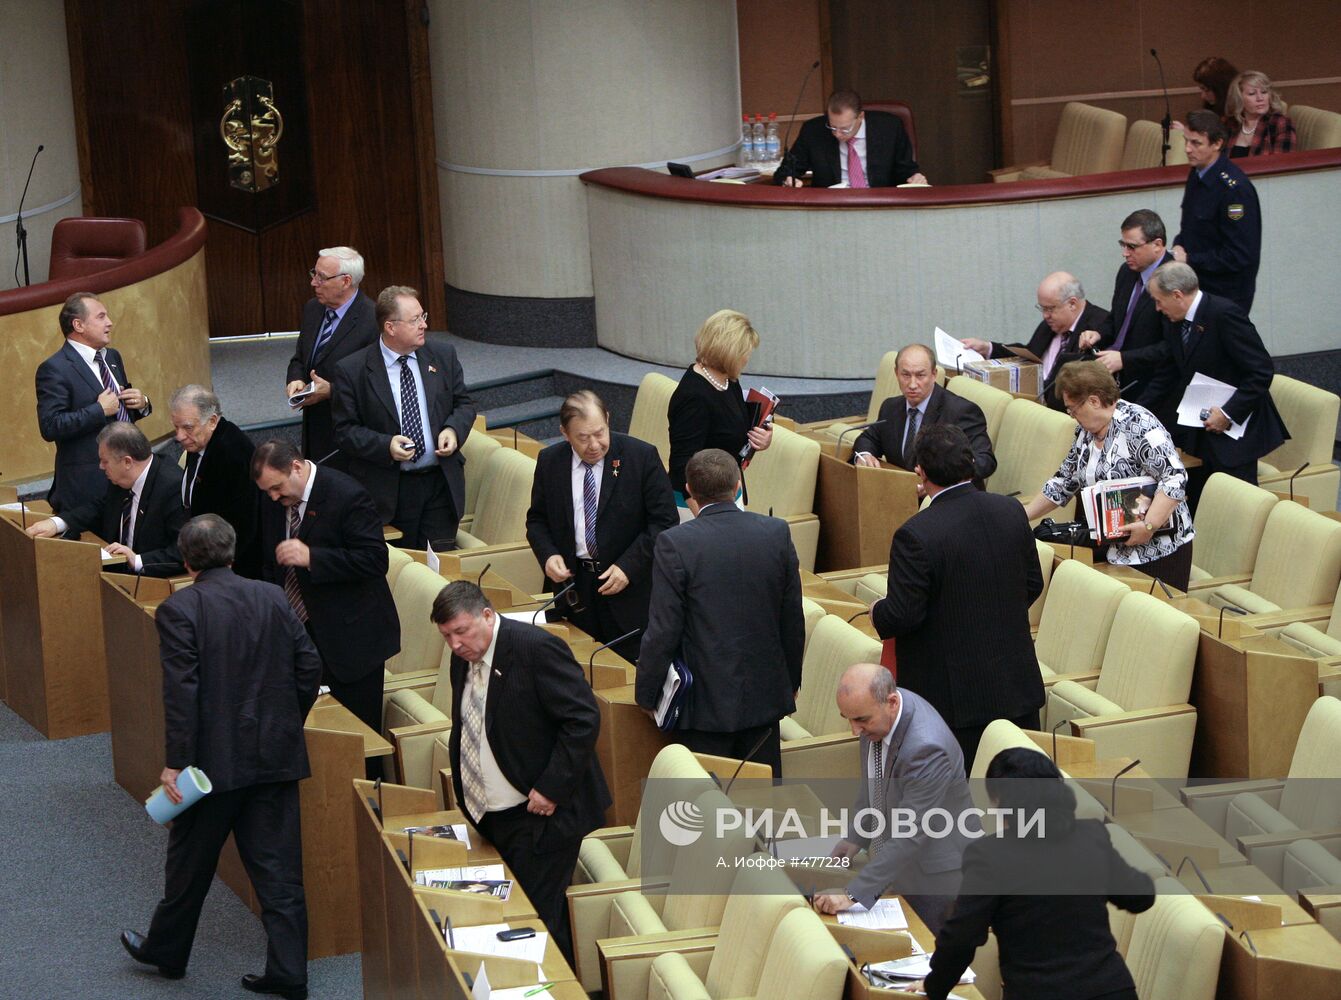 Три фракции покинули заседание Госдумы в знак протеста